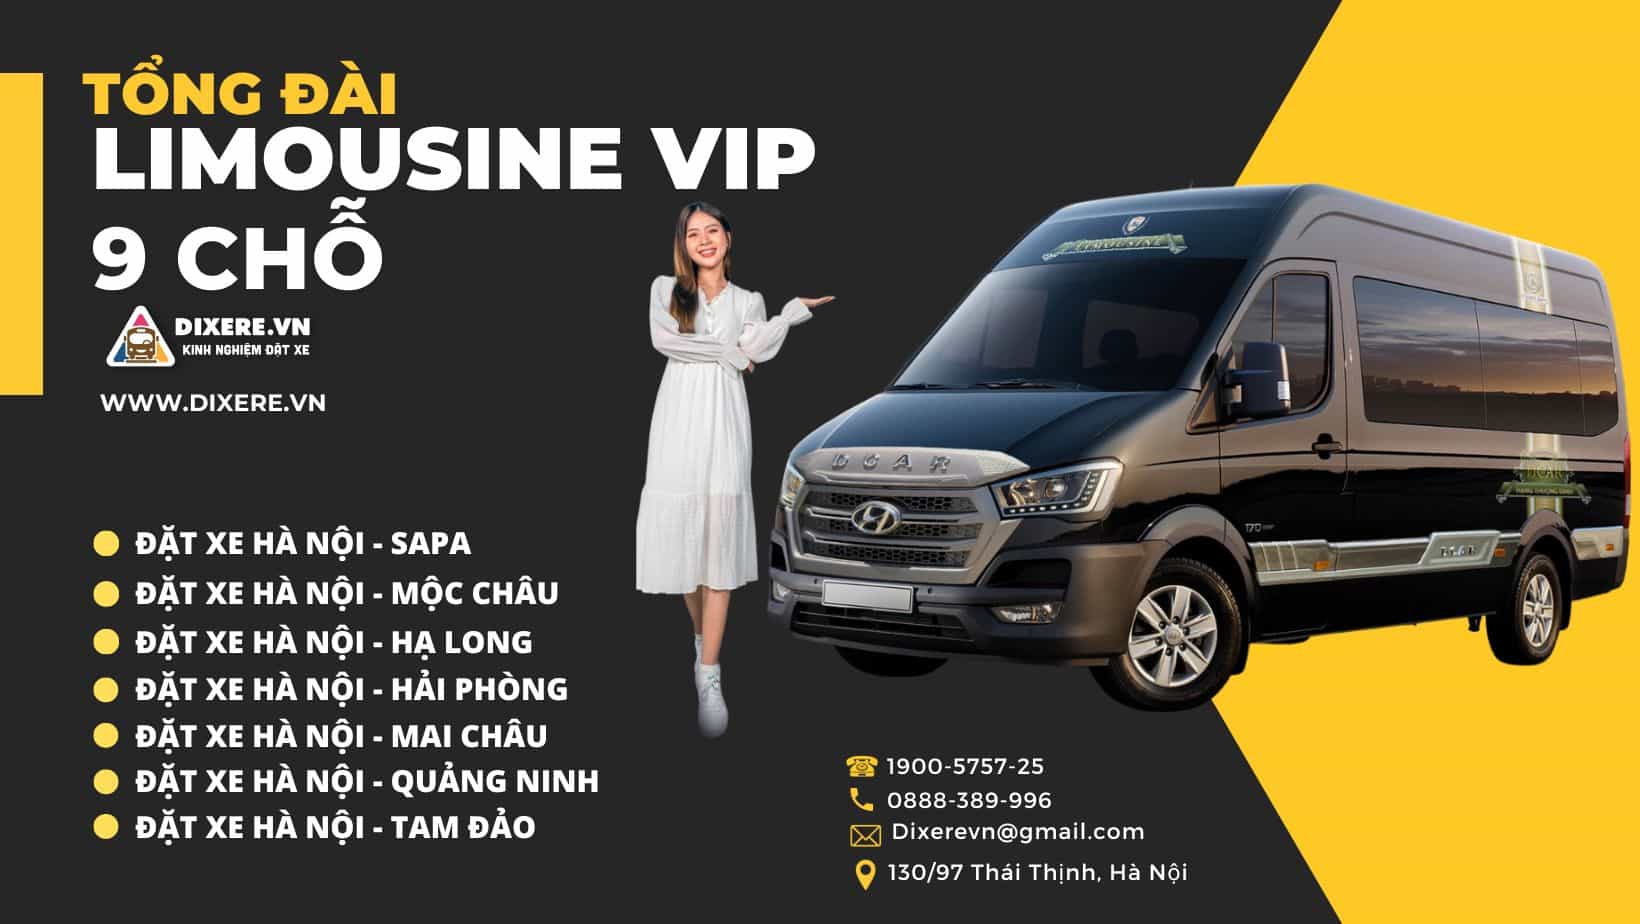 Adam Việt Travel đơn vị cho thuê xe limousine chất lượng